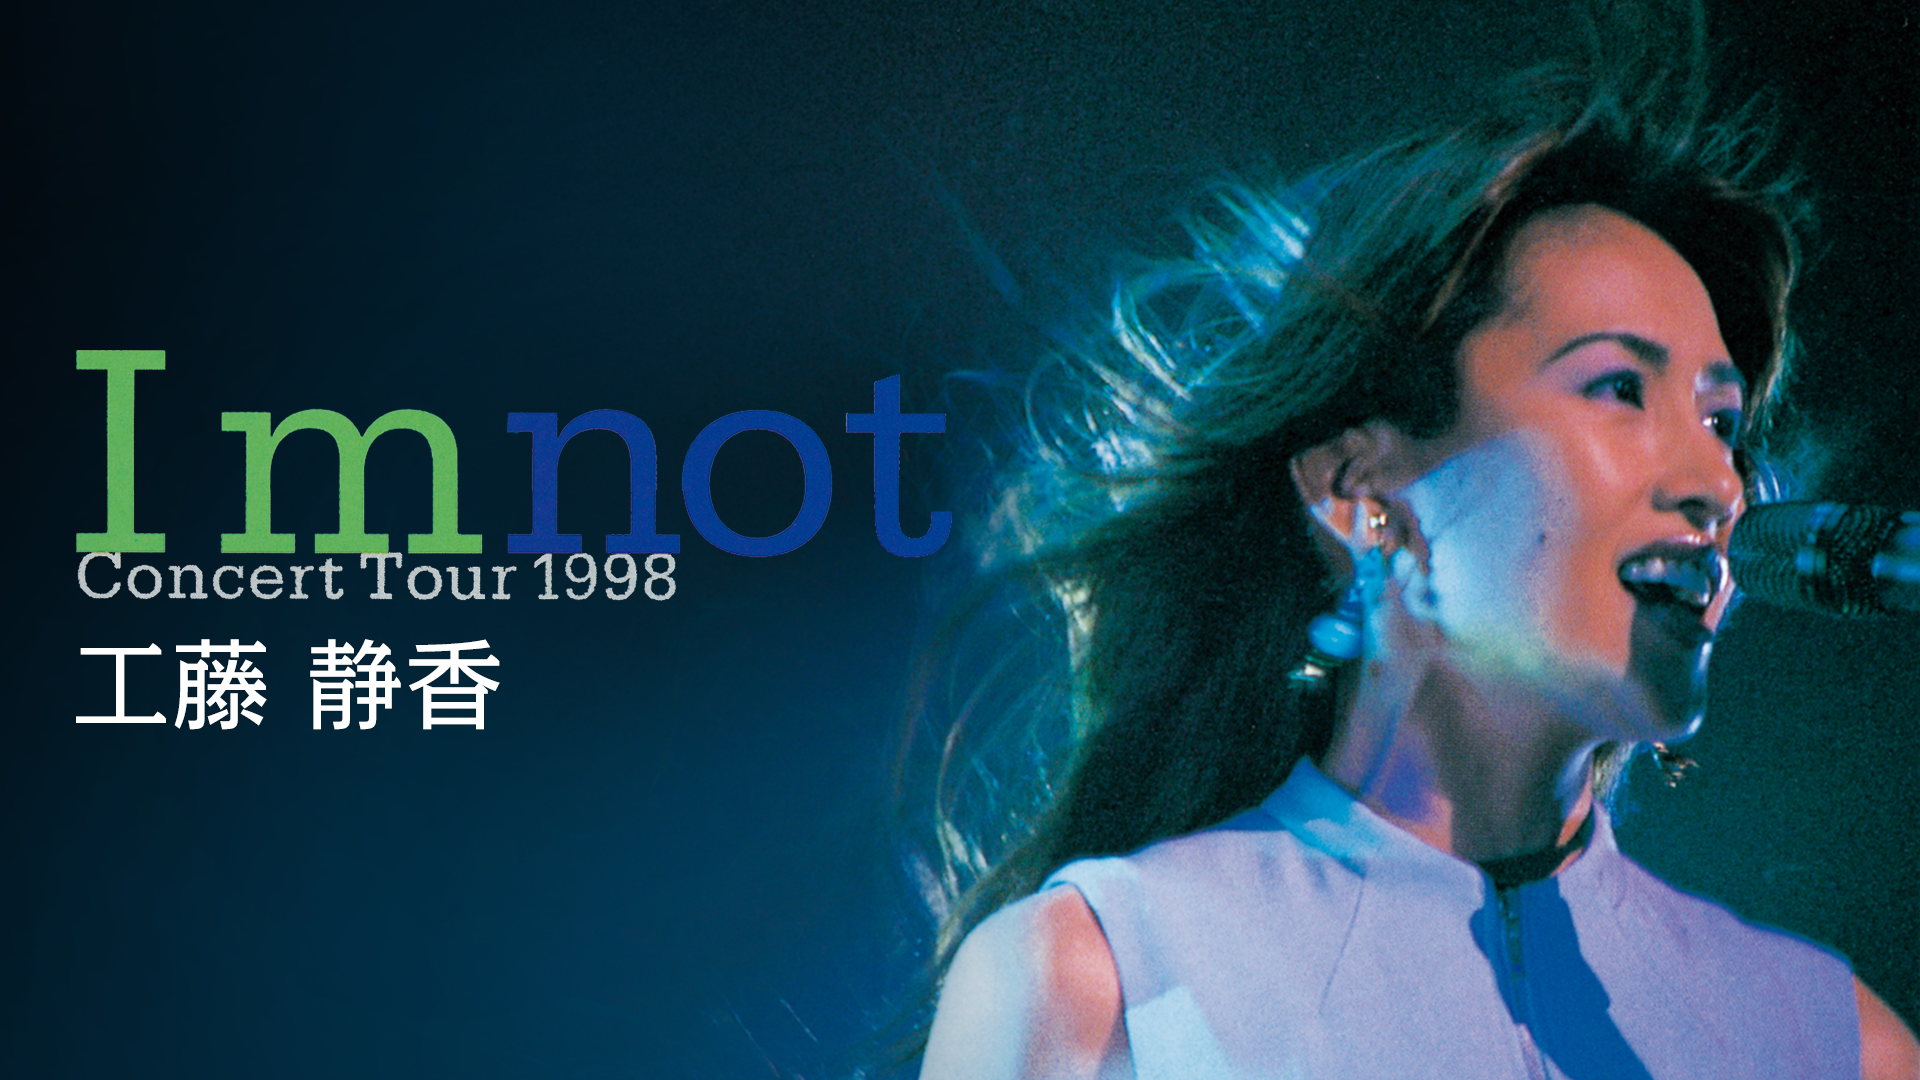 工藤 静香 I'm not Concert Tour 1998(音楽・ライブ / 1998)の動画視聴